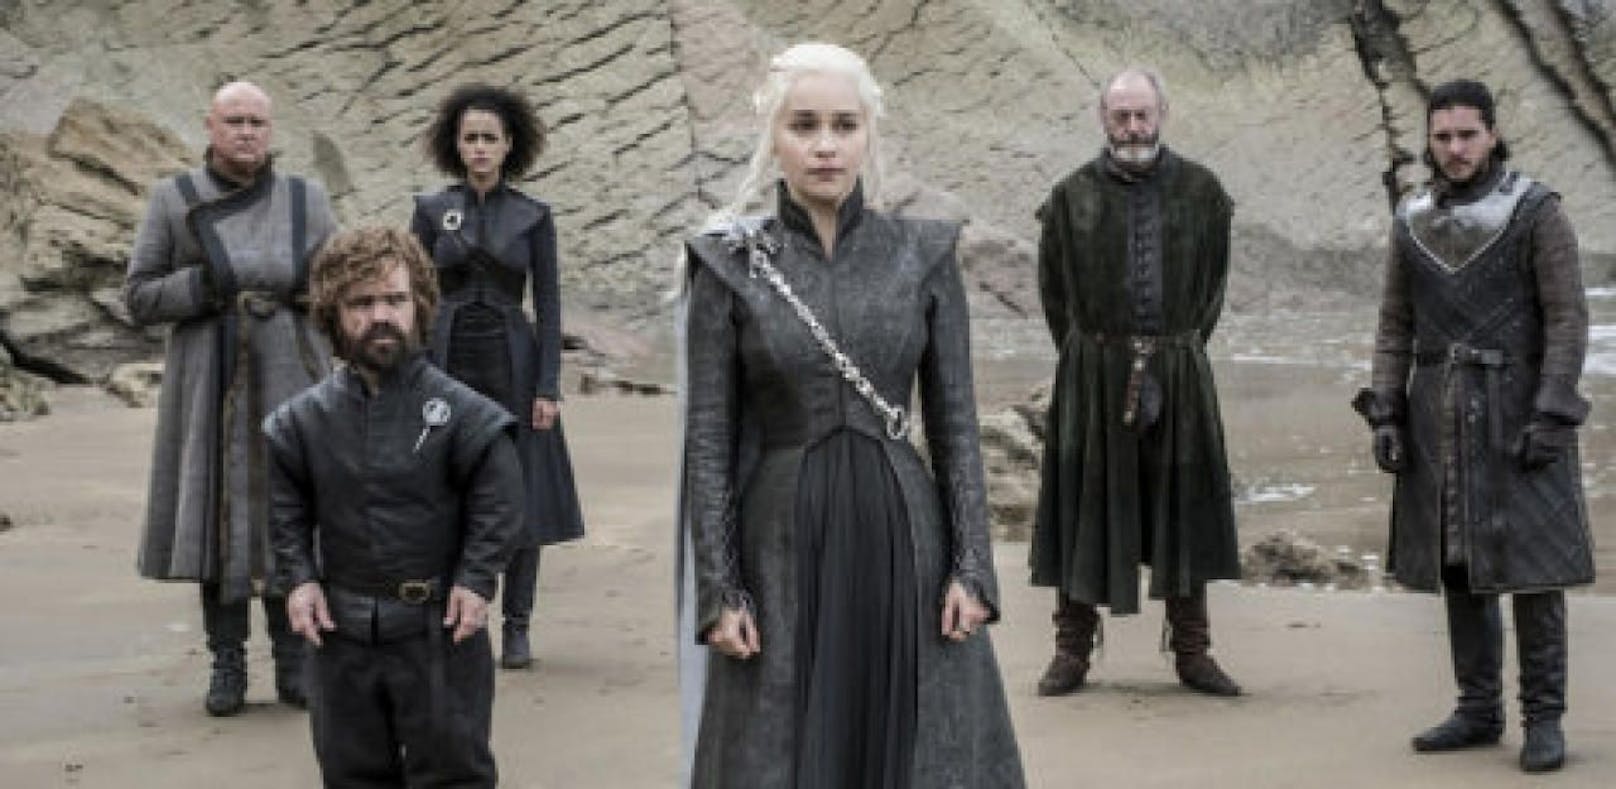 Casting-Aufruf: "Game of Thrones" sucht Darsteller!